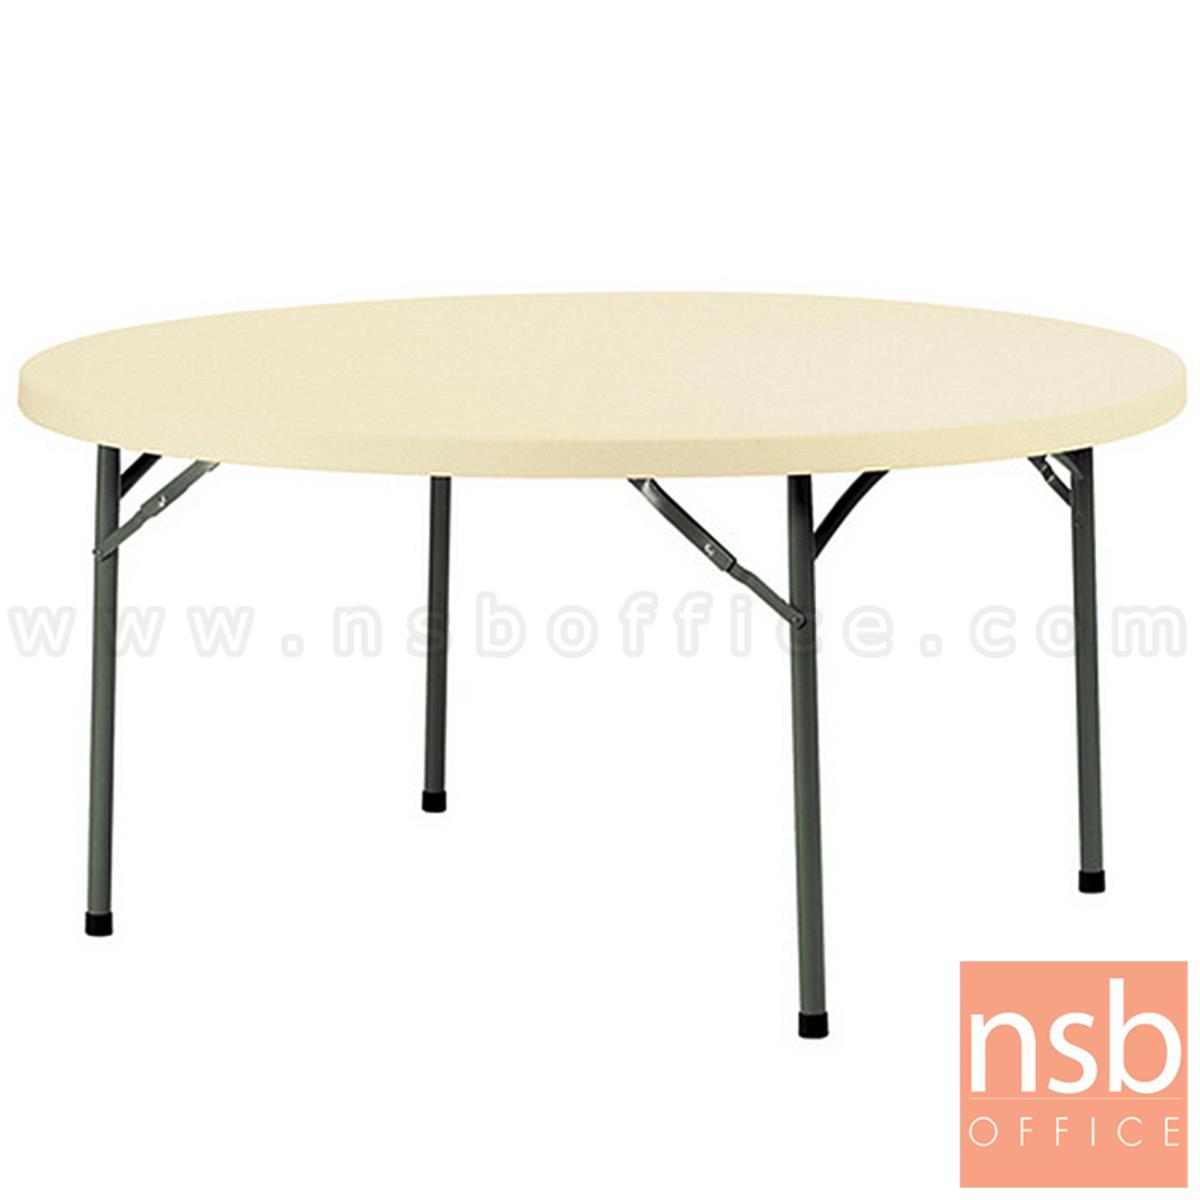 A19A039:โต๊ะพับหน้าพลาสติก รุ่น Newton (นิวตัน) ขนาด 120Di ,150Di cm.  โครงเหล็ก